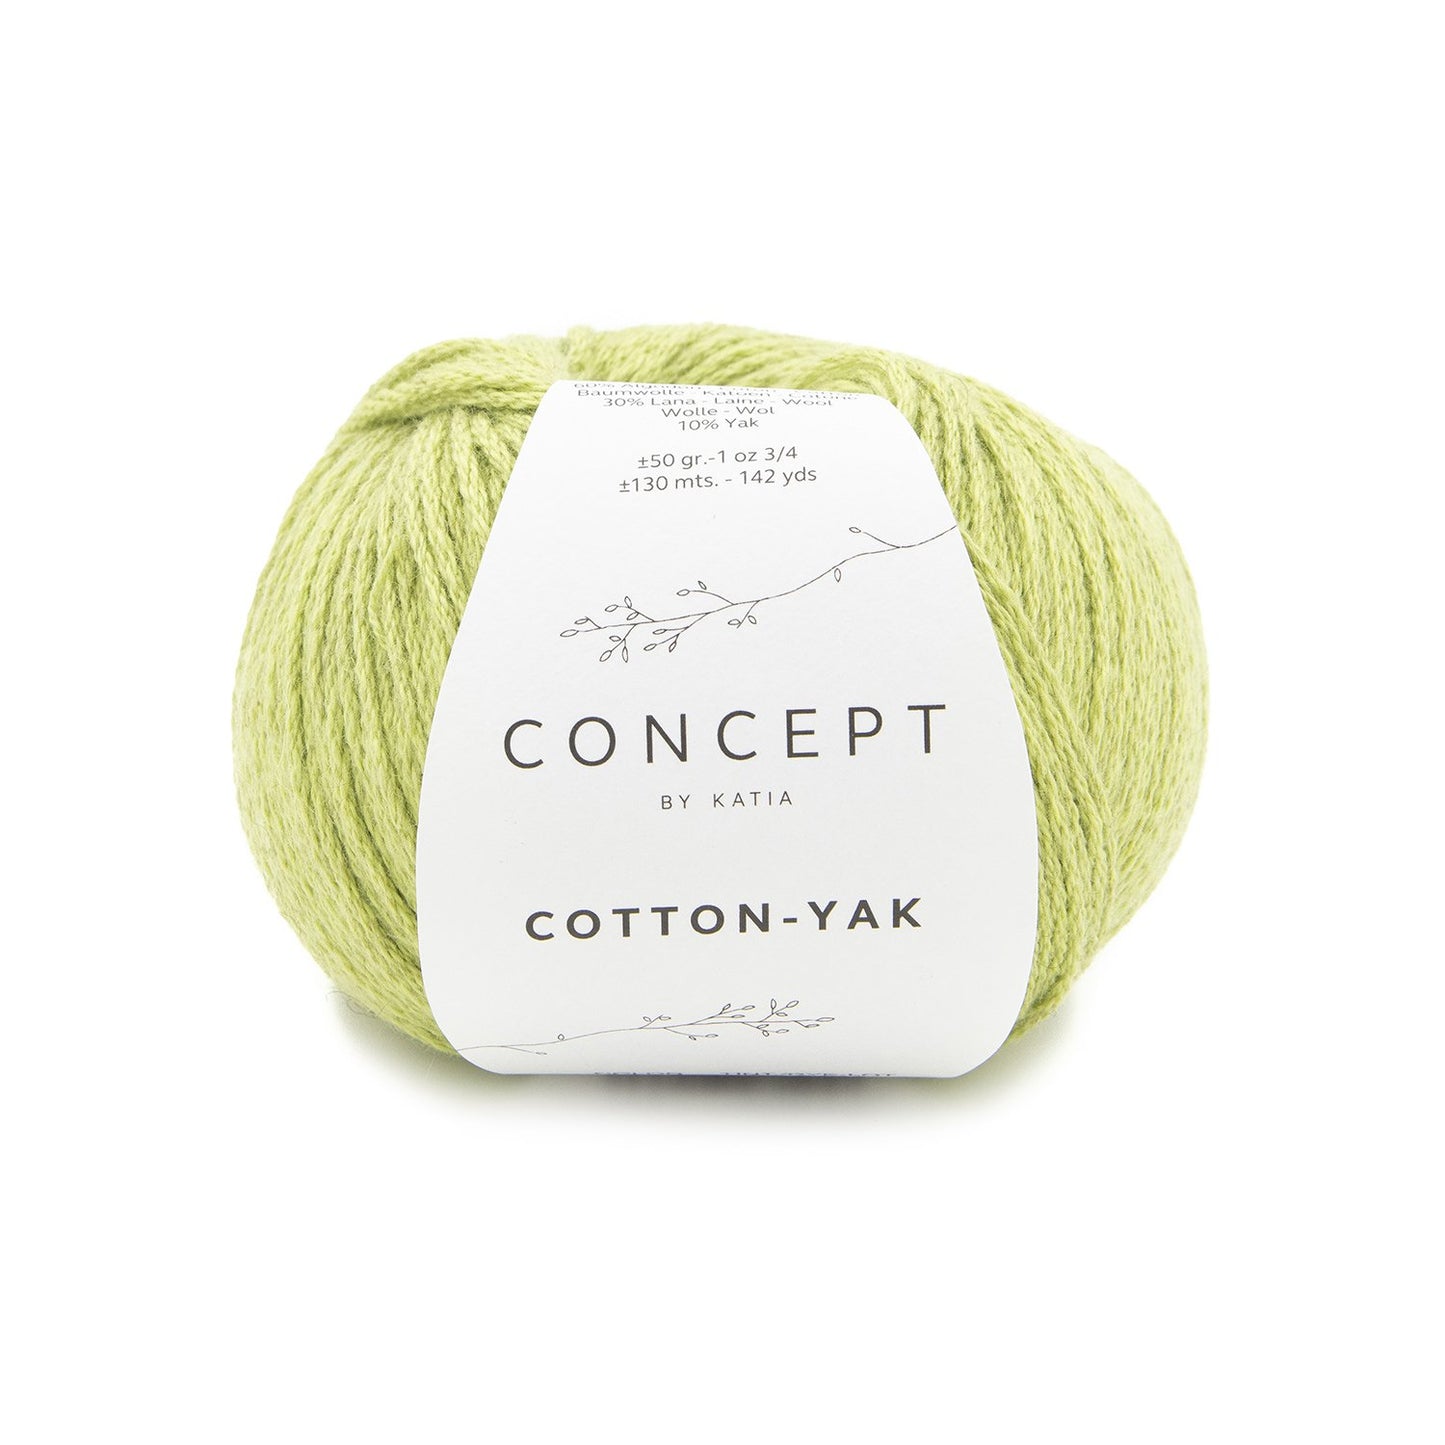 Concept Cotton-Yak